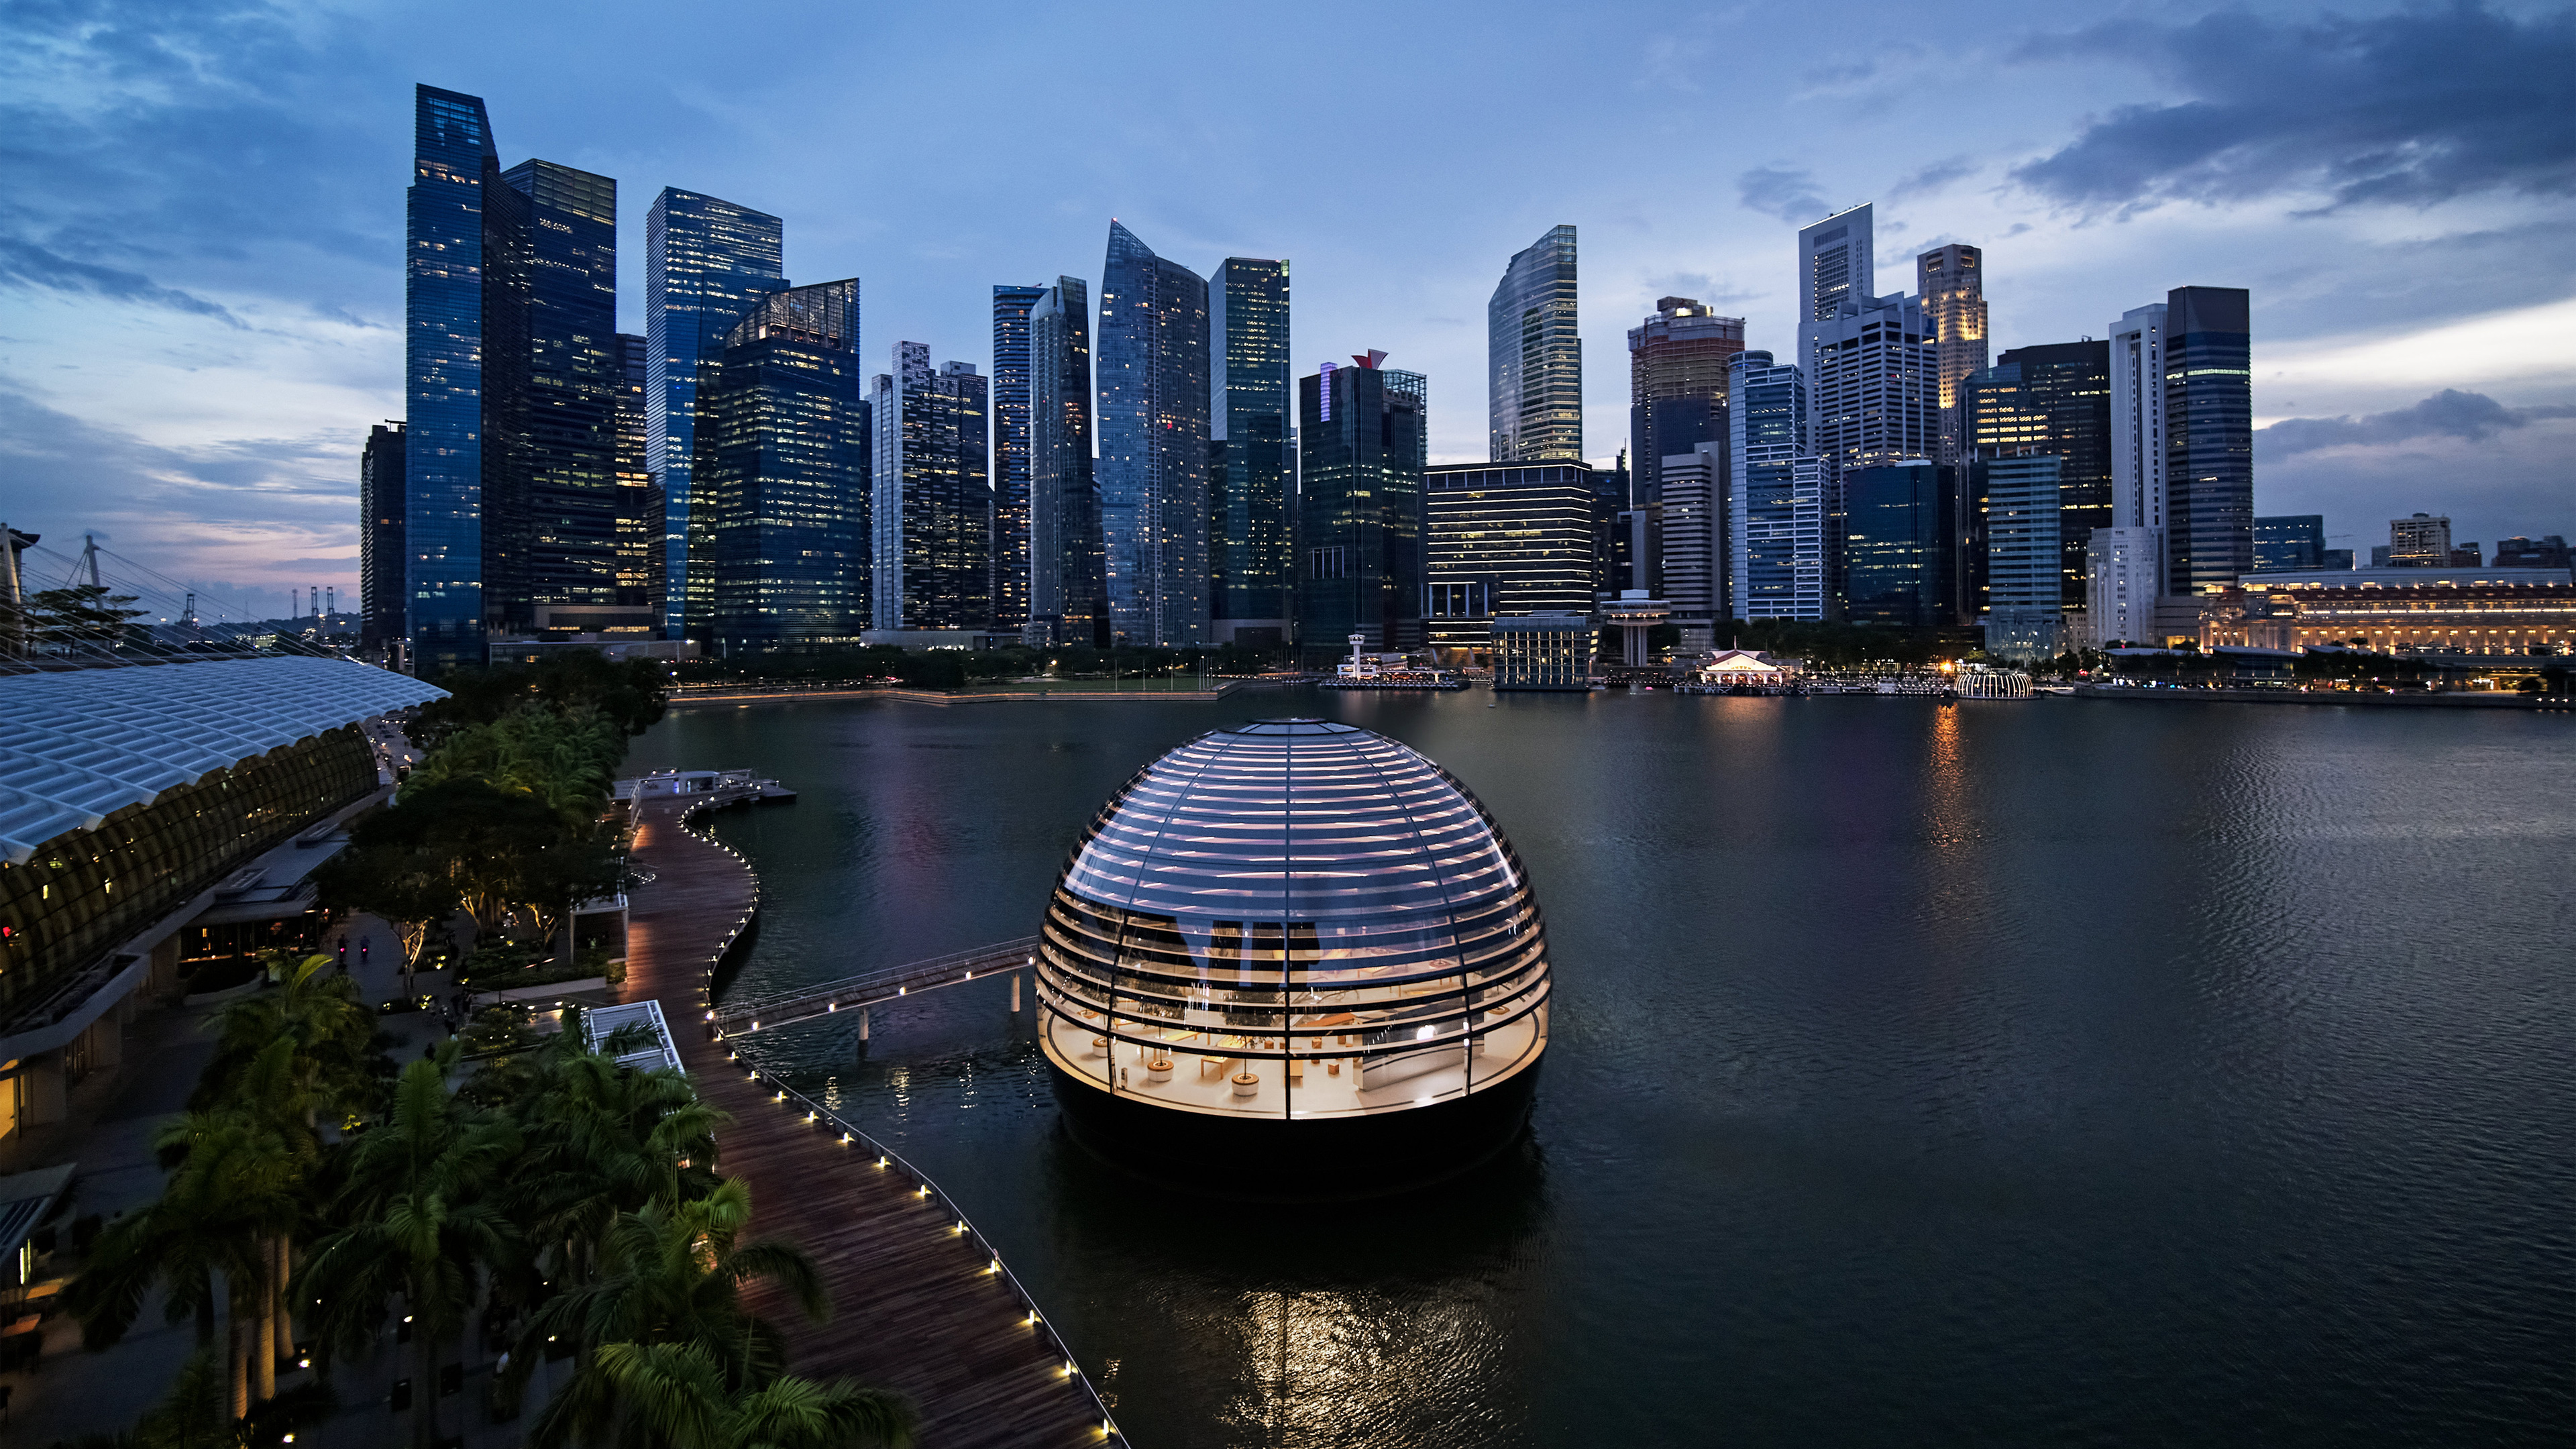 La nueva tienda esférica flotante de Apple en Singapur está construida en gran parte de vidrio y permite vistas panorámicas de 360 grados. (Foto Prensa Libre: Apple/dpa)